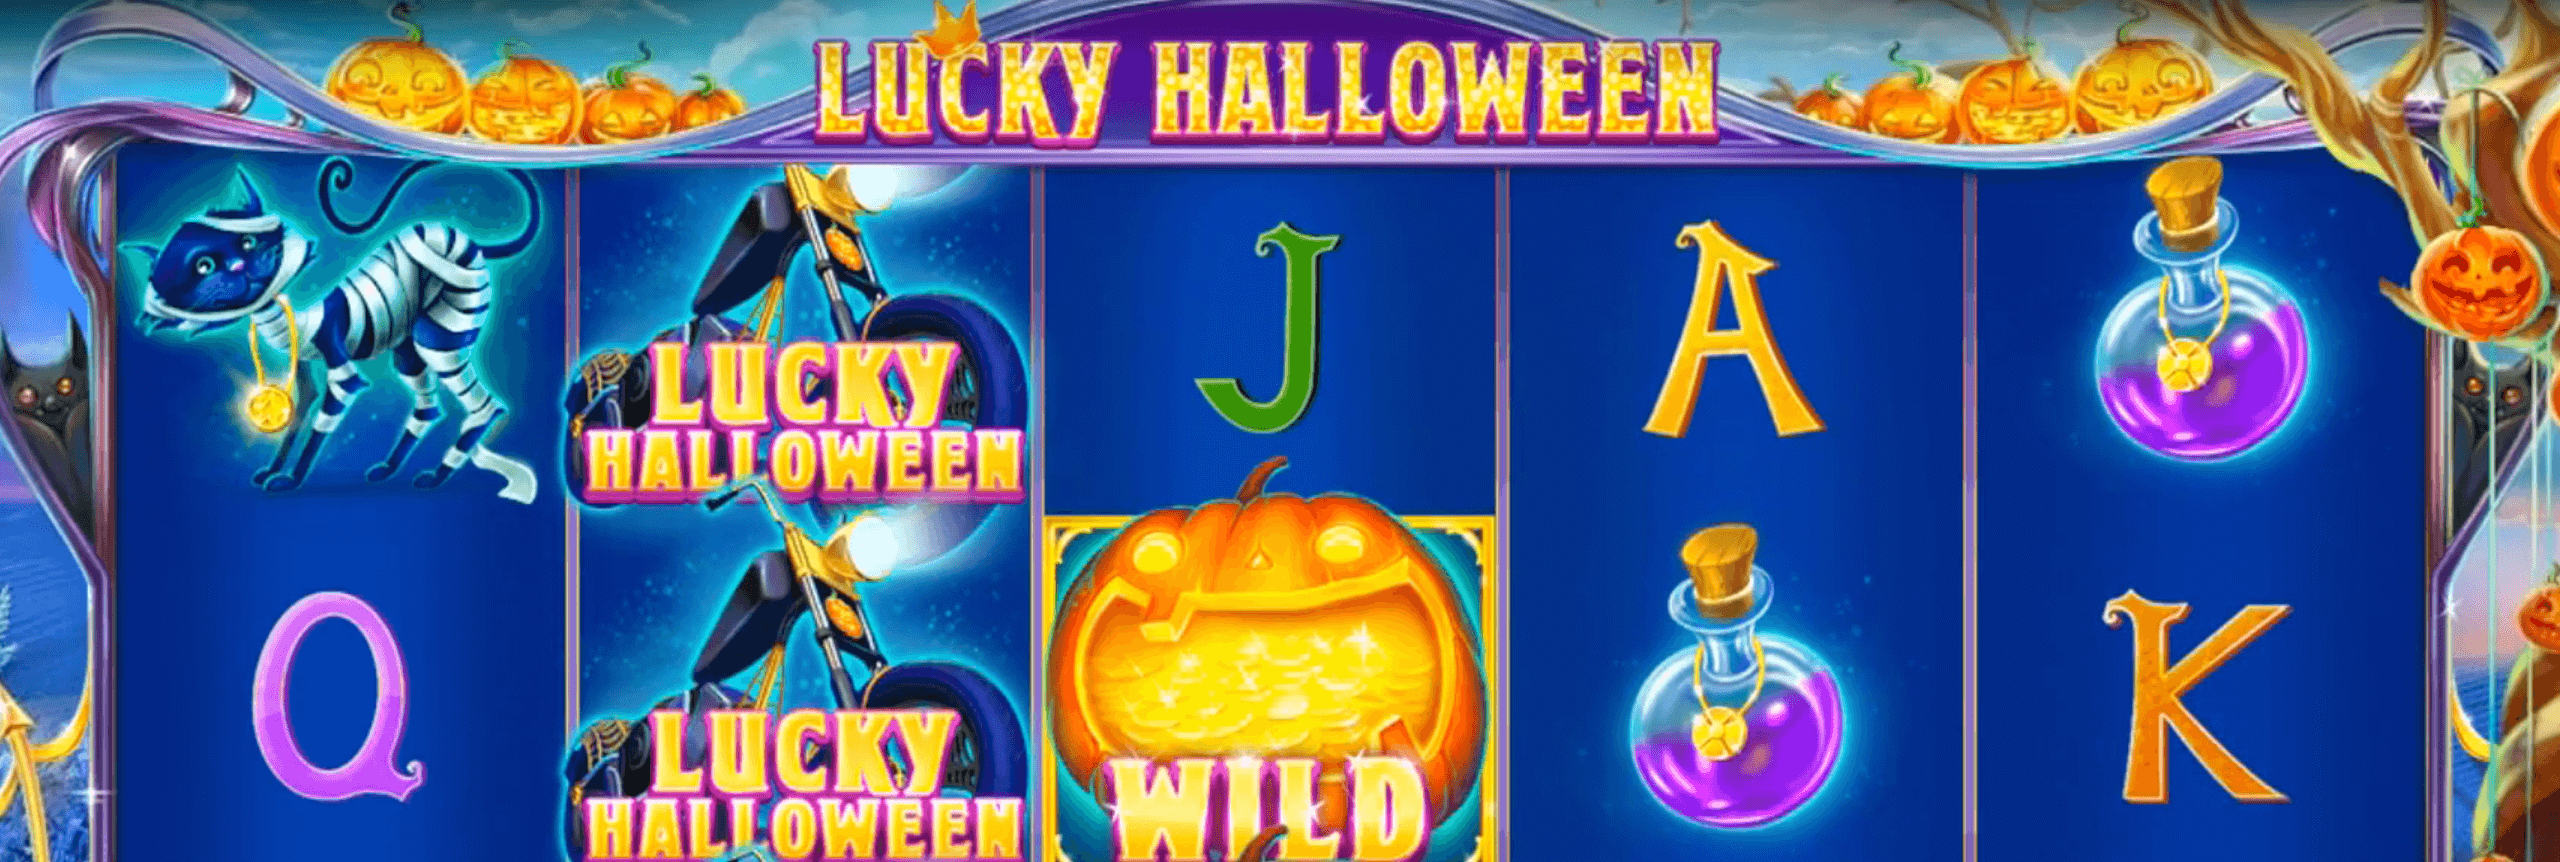 juego lucky halloween